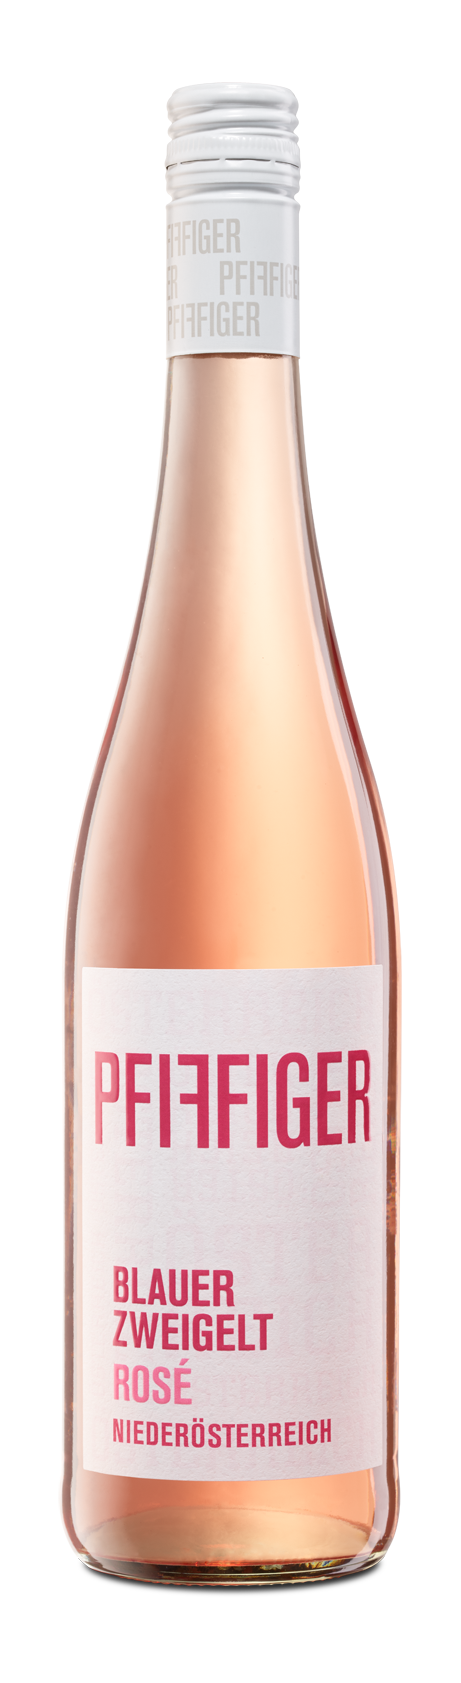 Pfiffiger Rosé Zweigelt - Wines Quality – Wine Global Blauer